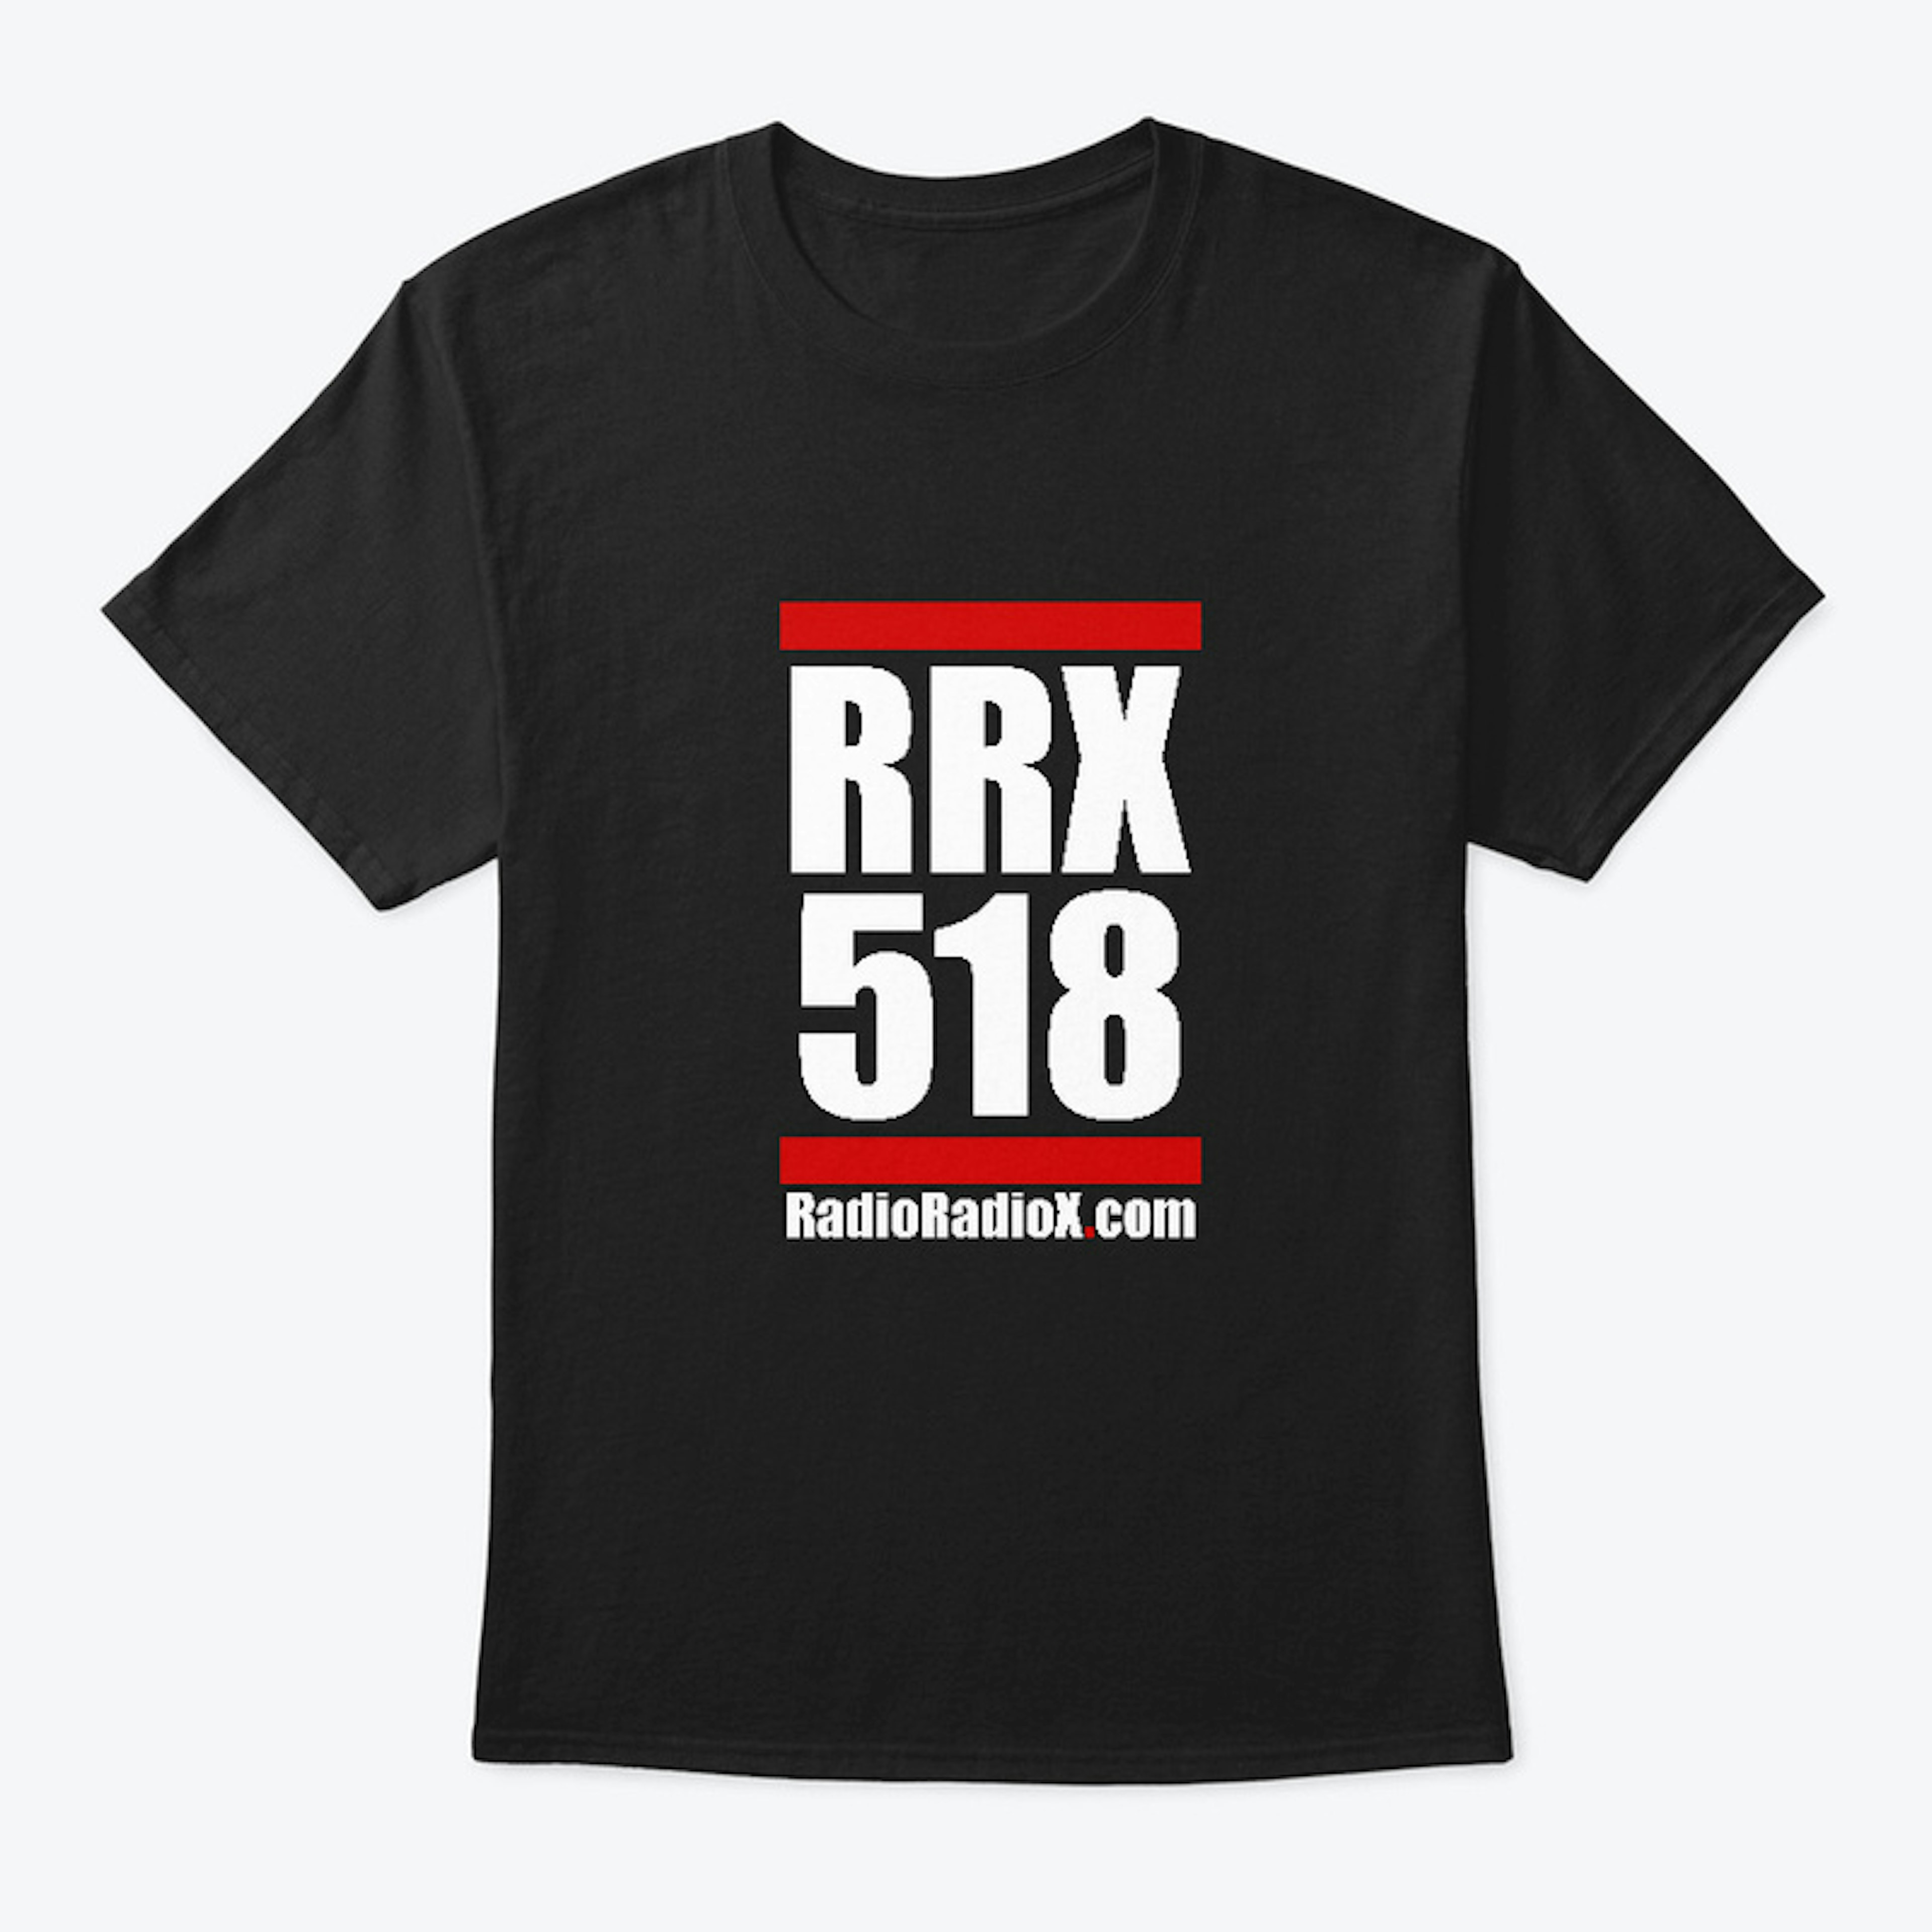 RRX518 Black Tee